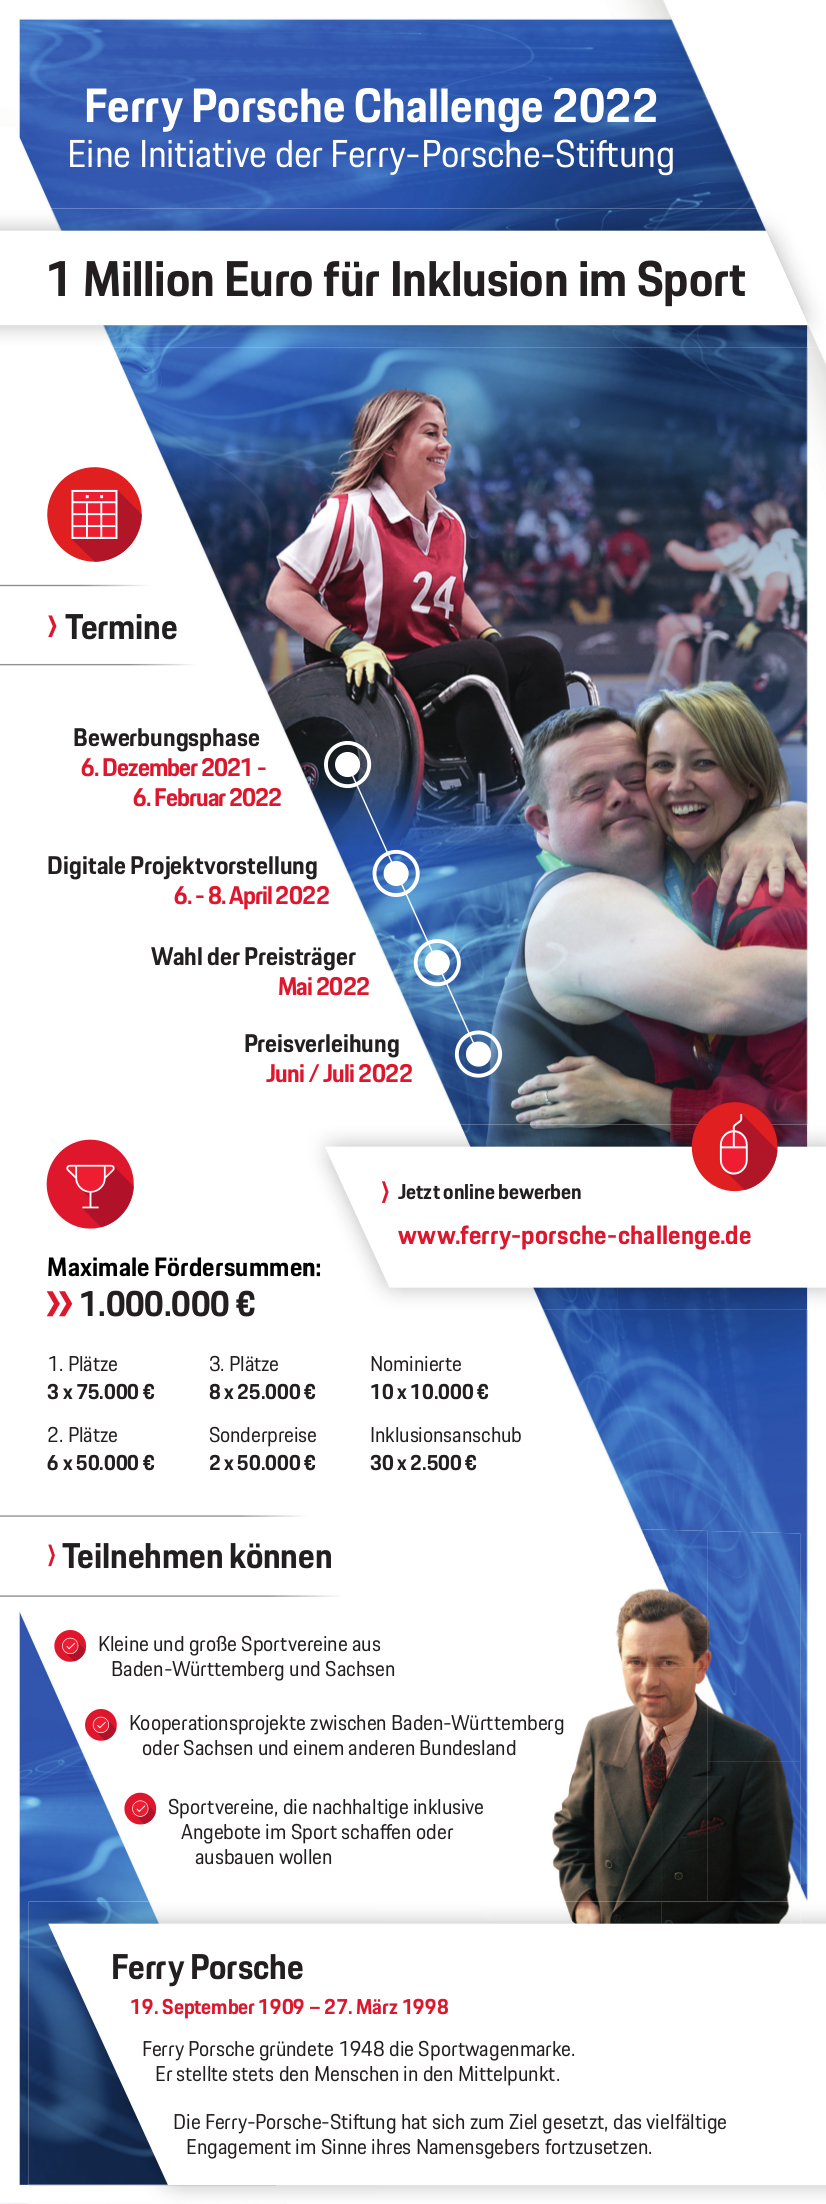 Ferry Porsche Challenge 2022: 1 Million Euro für Inklusion im Sport, Infografik, 2021, Porsche AG